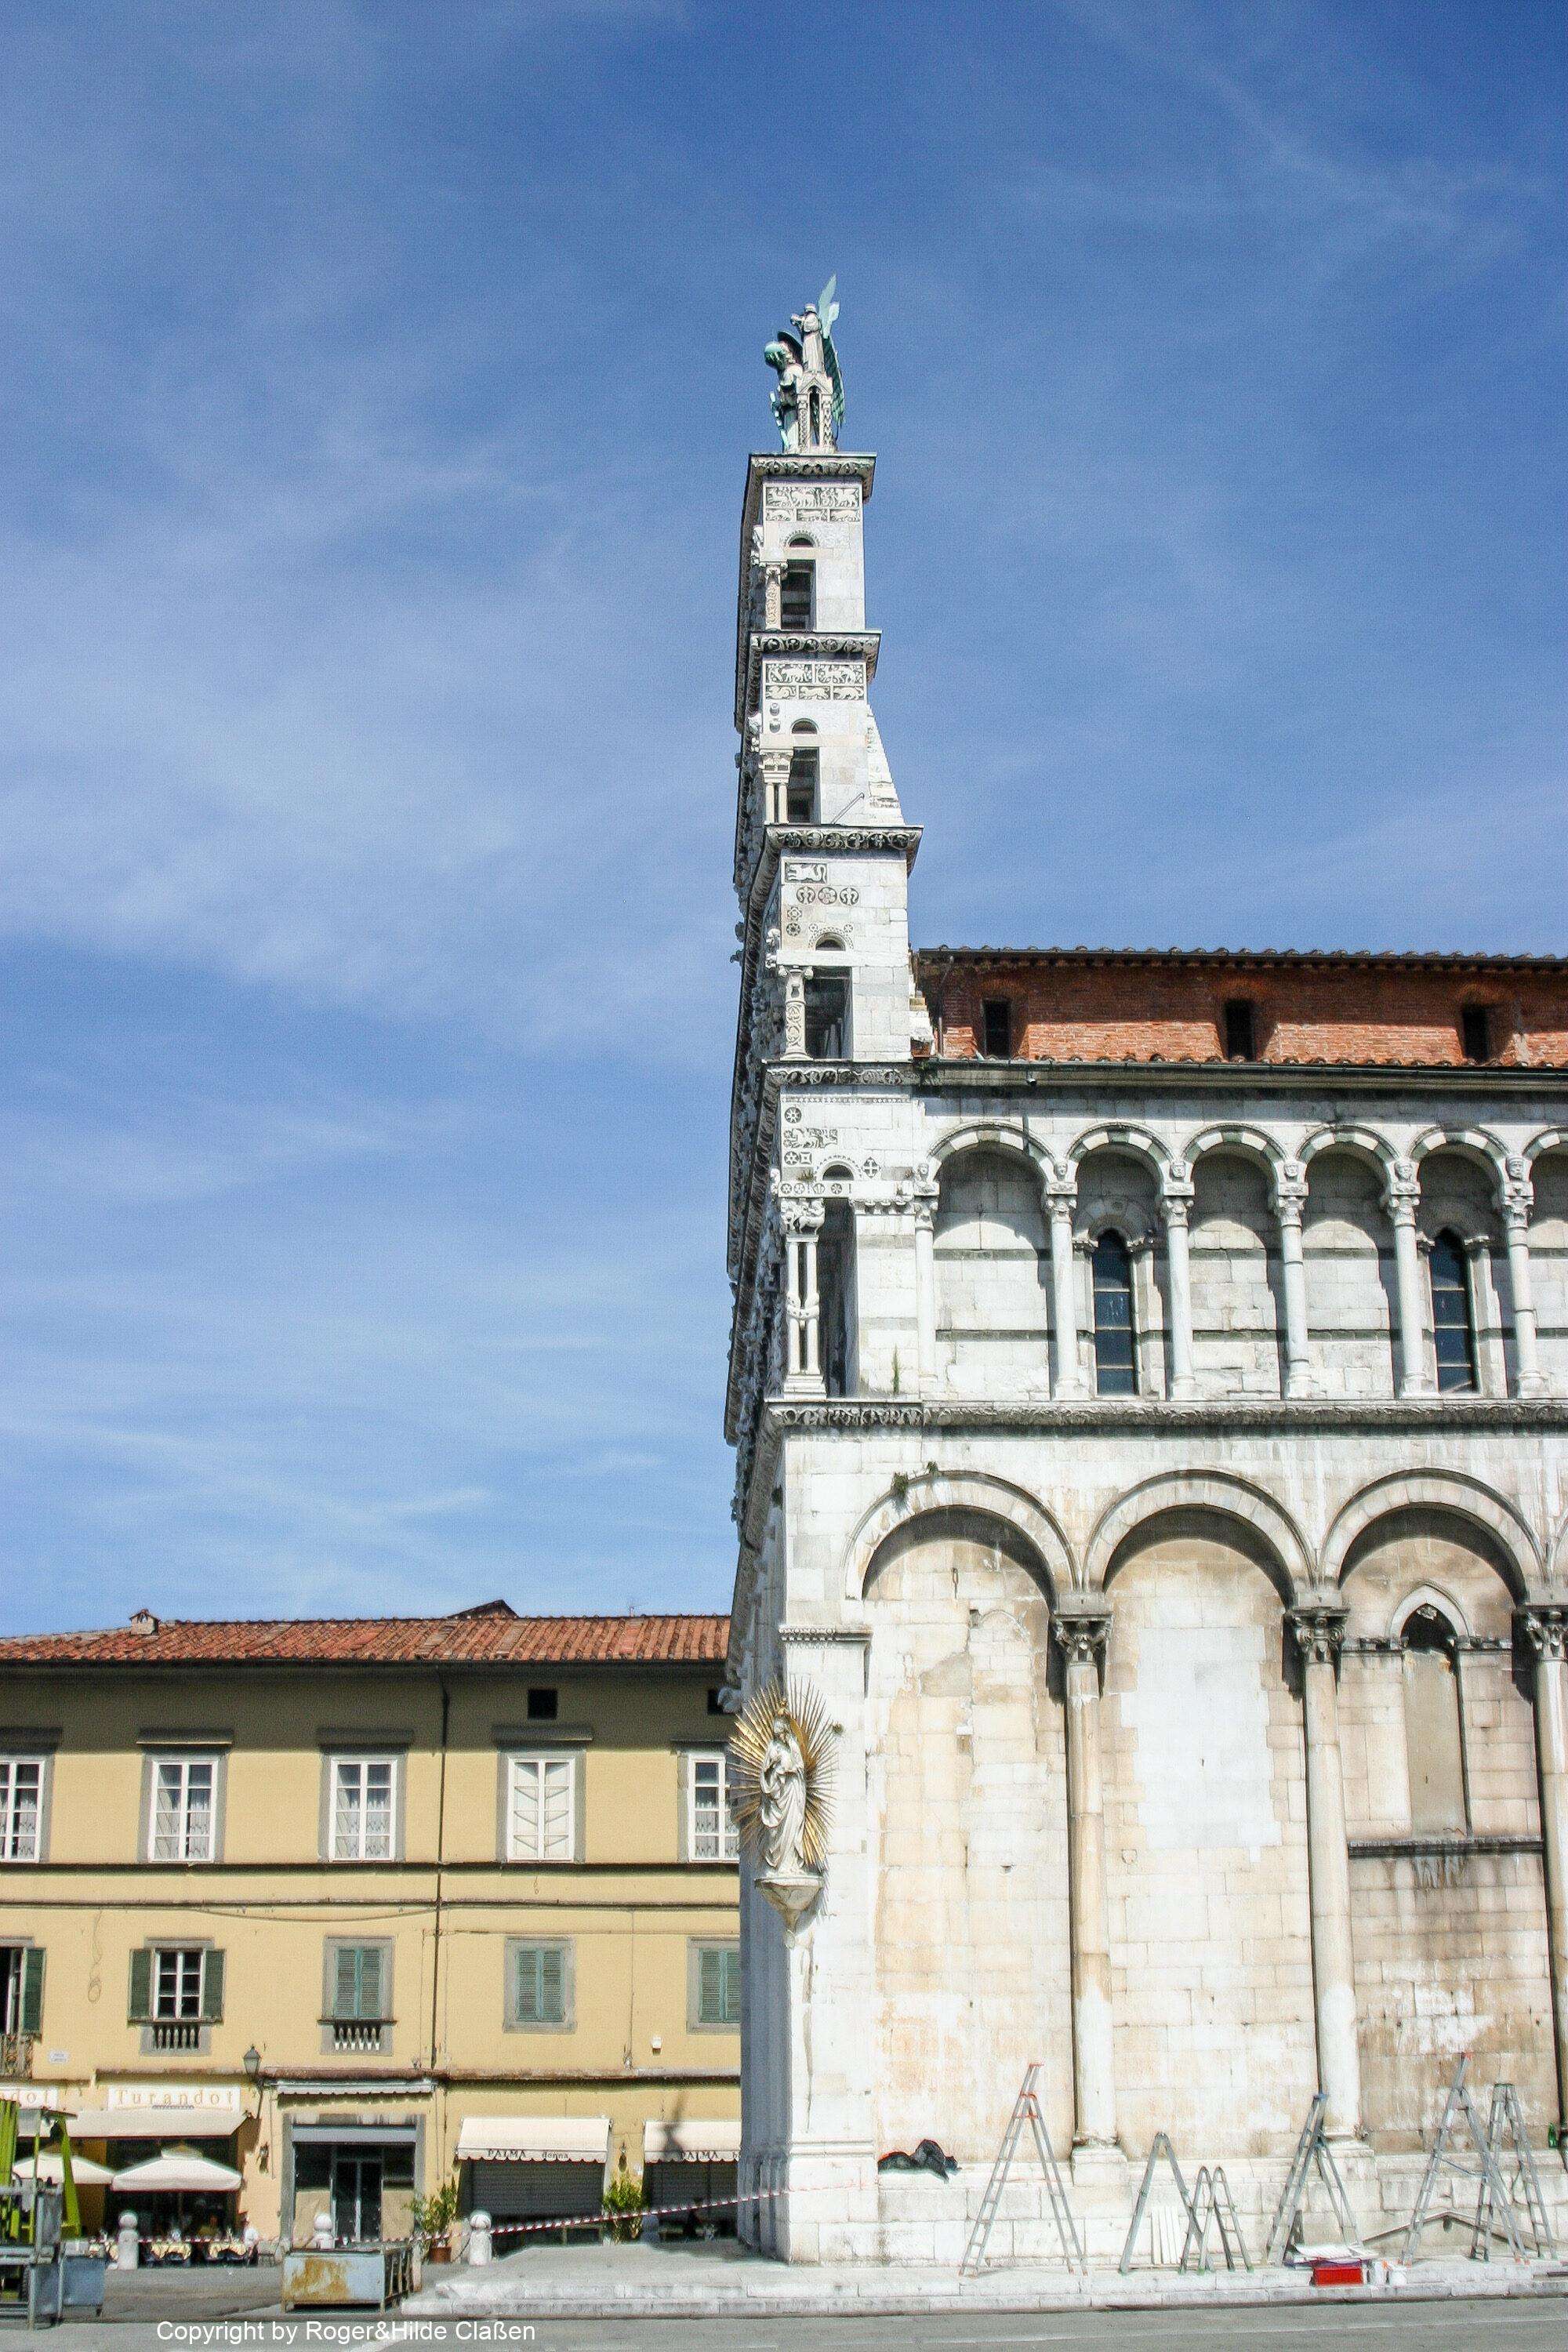 San Michele. (12.Jahrhundert) Diese Kirche zählt zu den bedeutendsten Kirchen in Lucca. Sie befindet sich auf dem alten römischen Marktplatz, dem Forum, von der Stadt